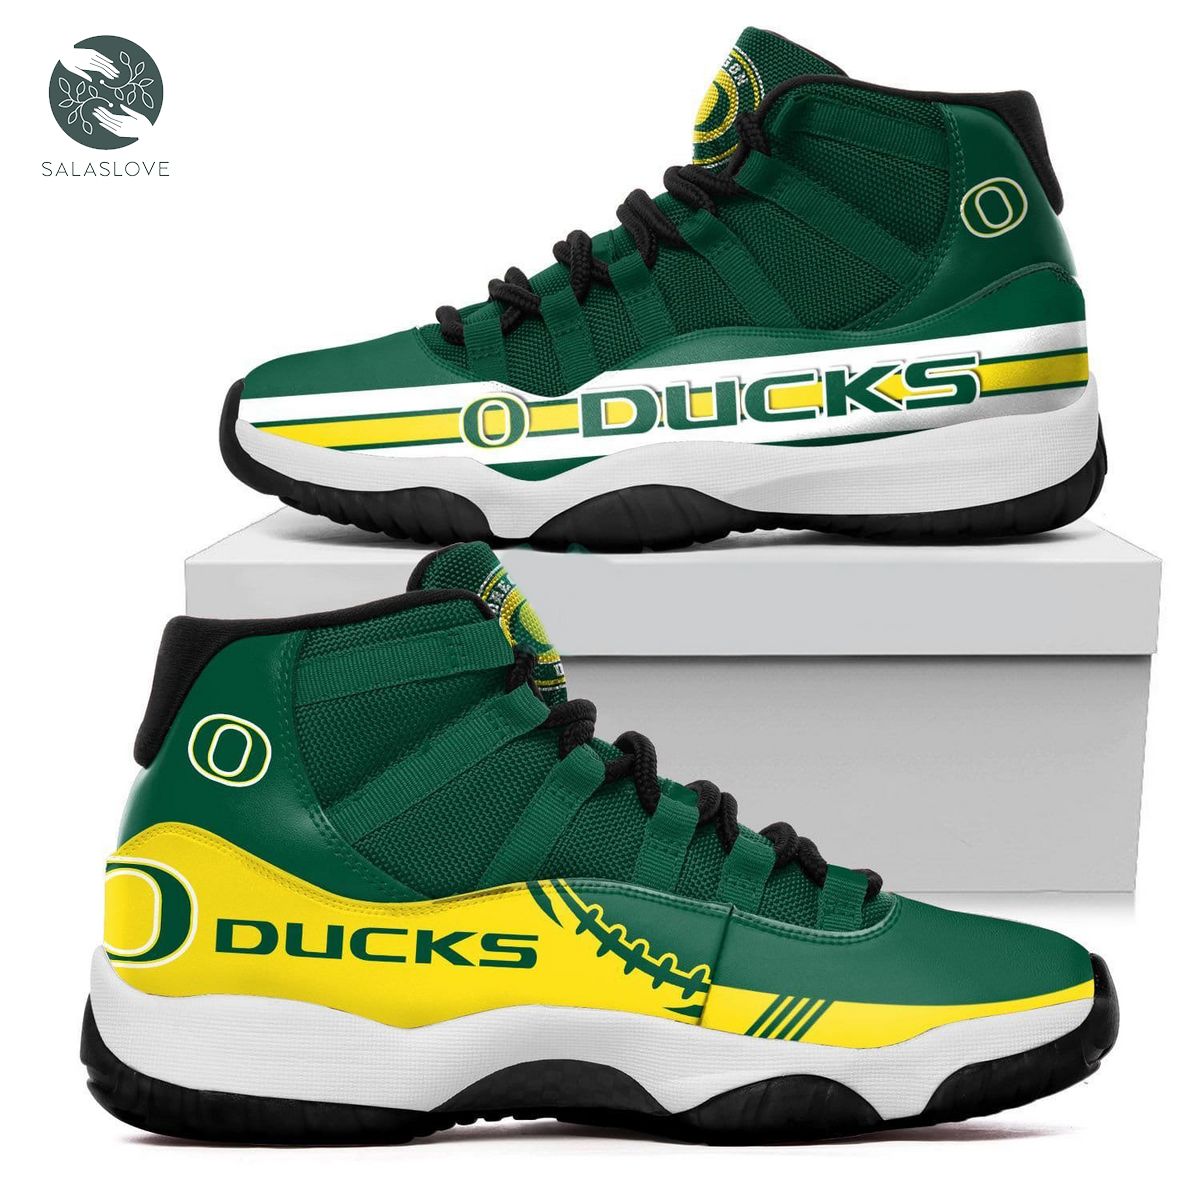 Oregon Ducks New Air Jordan 11